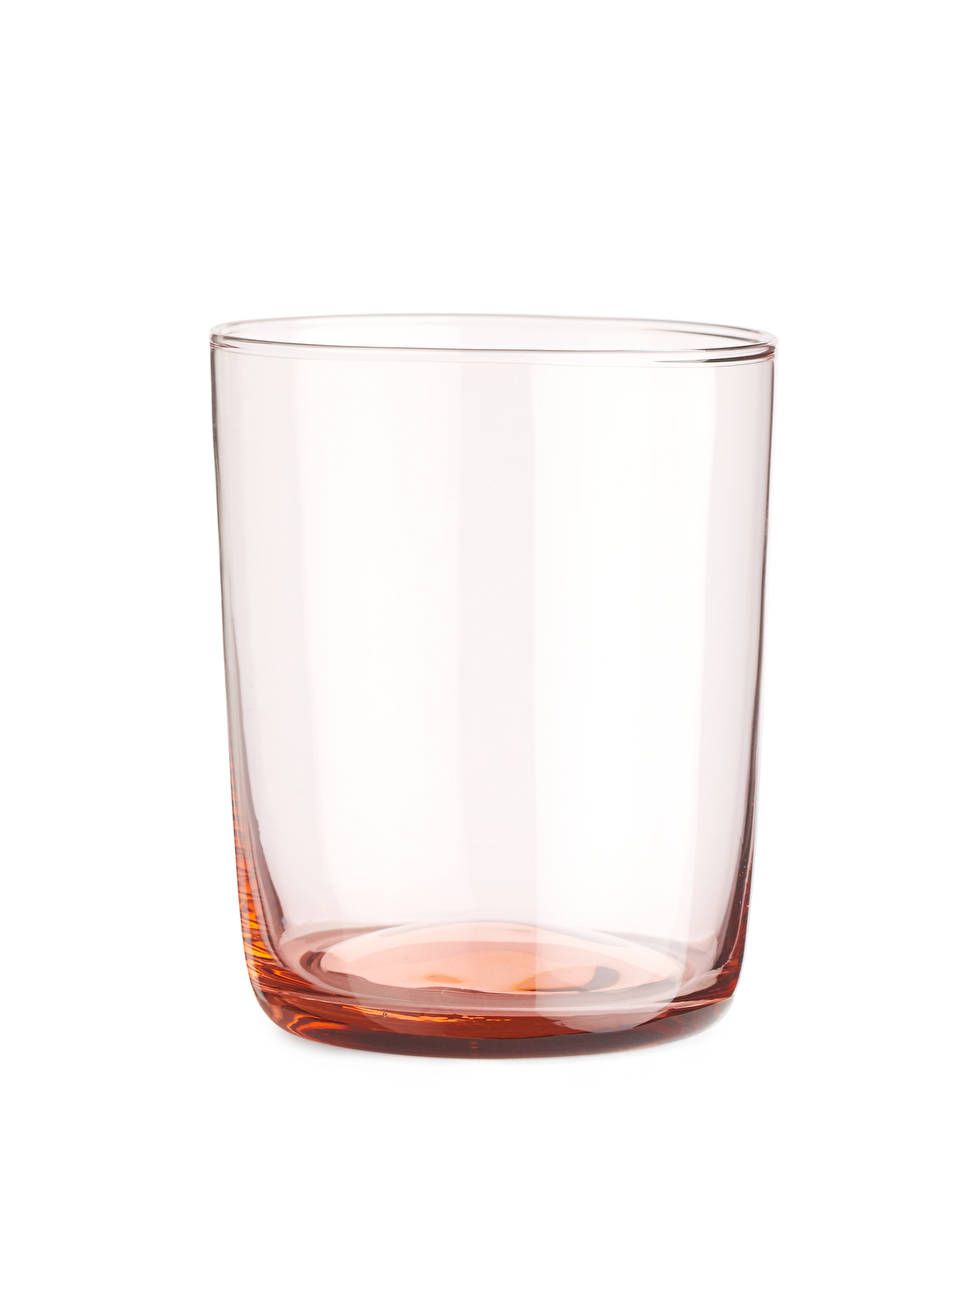 Drinking Glass Set of 2 - Light Pink - ARKET PT | ARKET (US&UK)